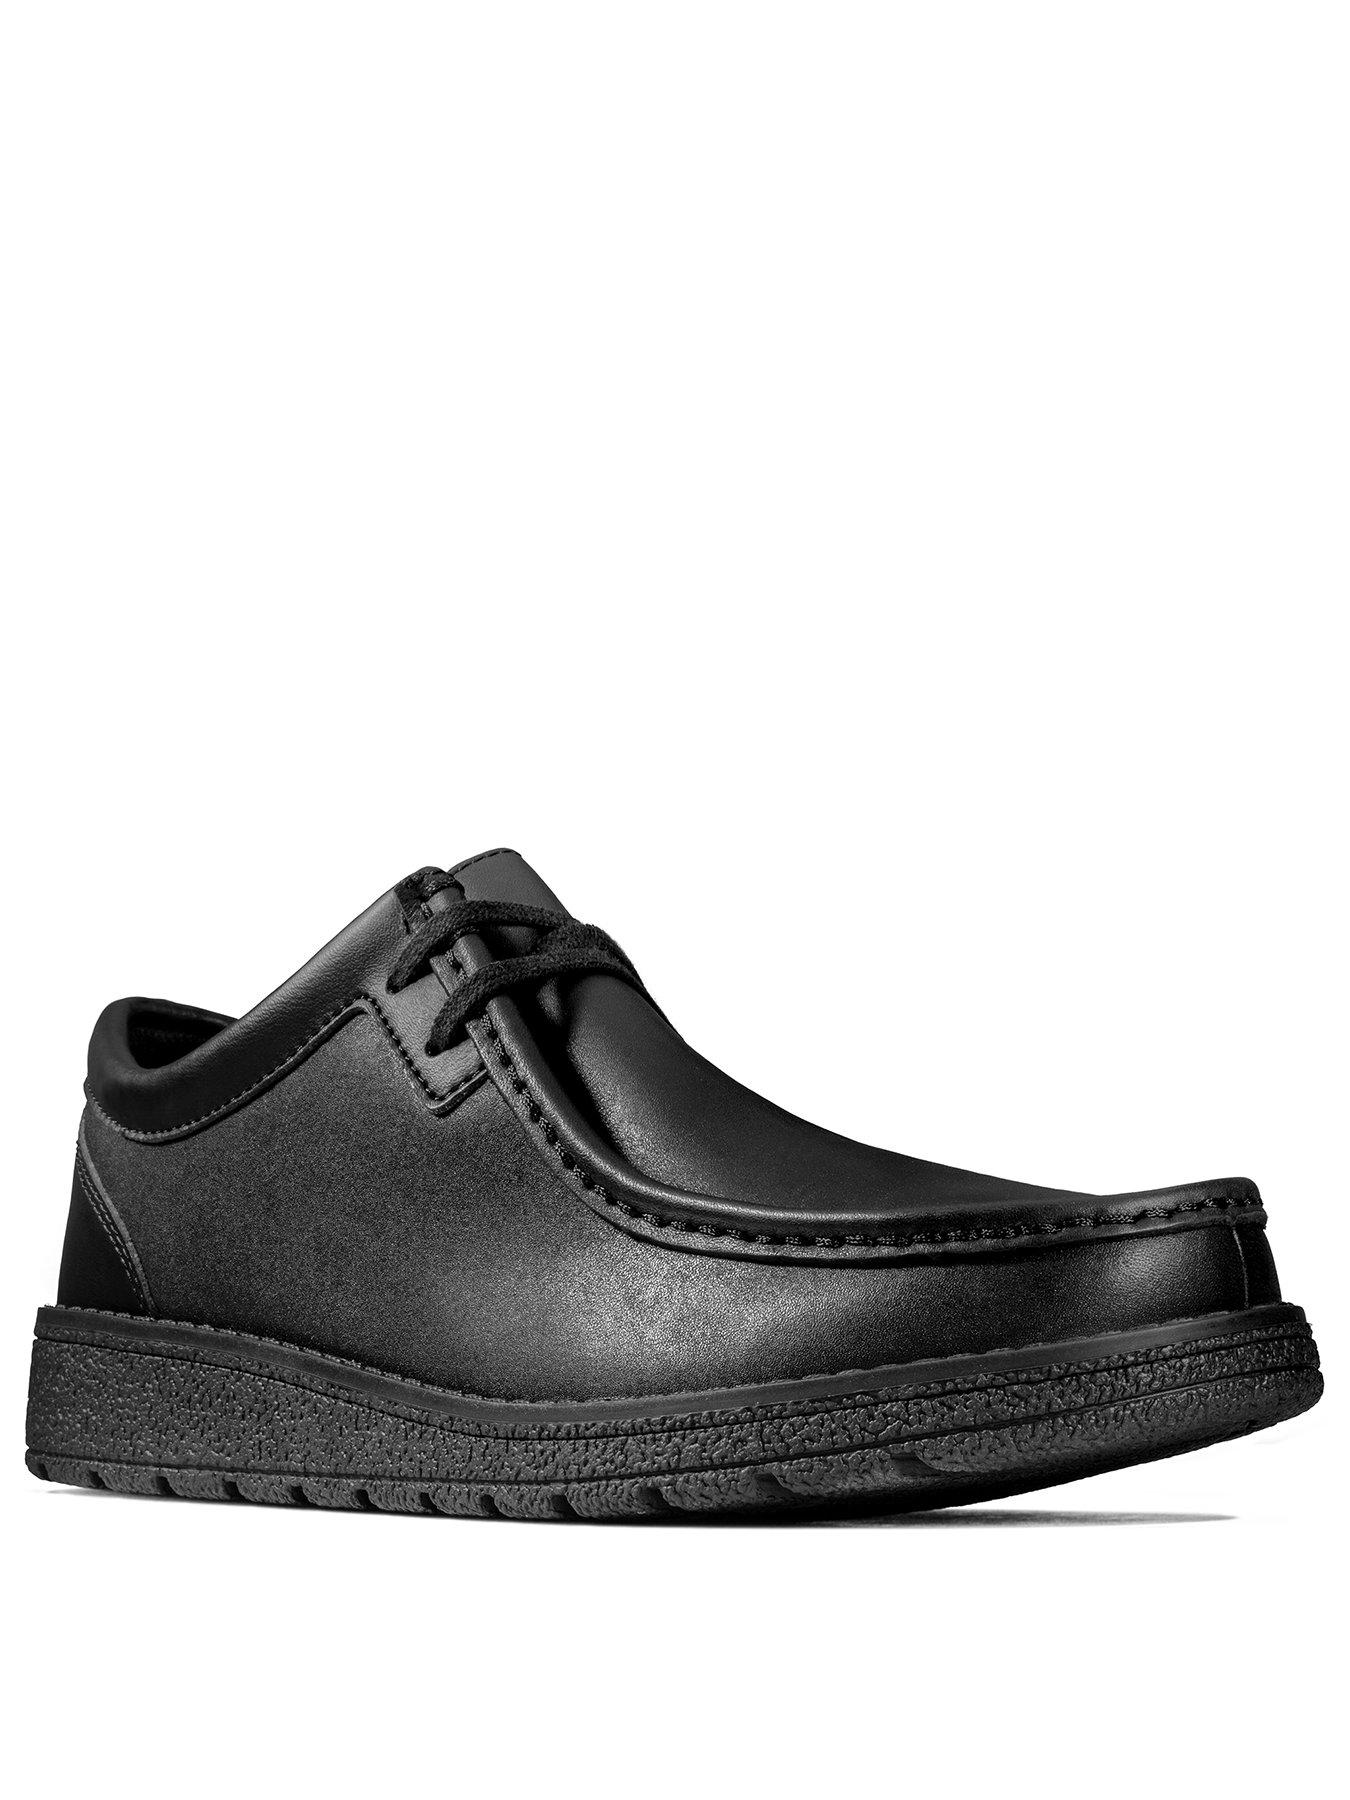 Clarks | School shoes | Shoes \u0026 boots 